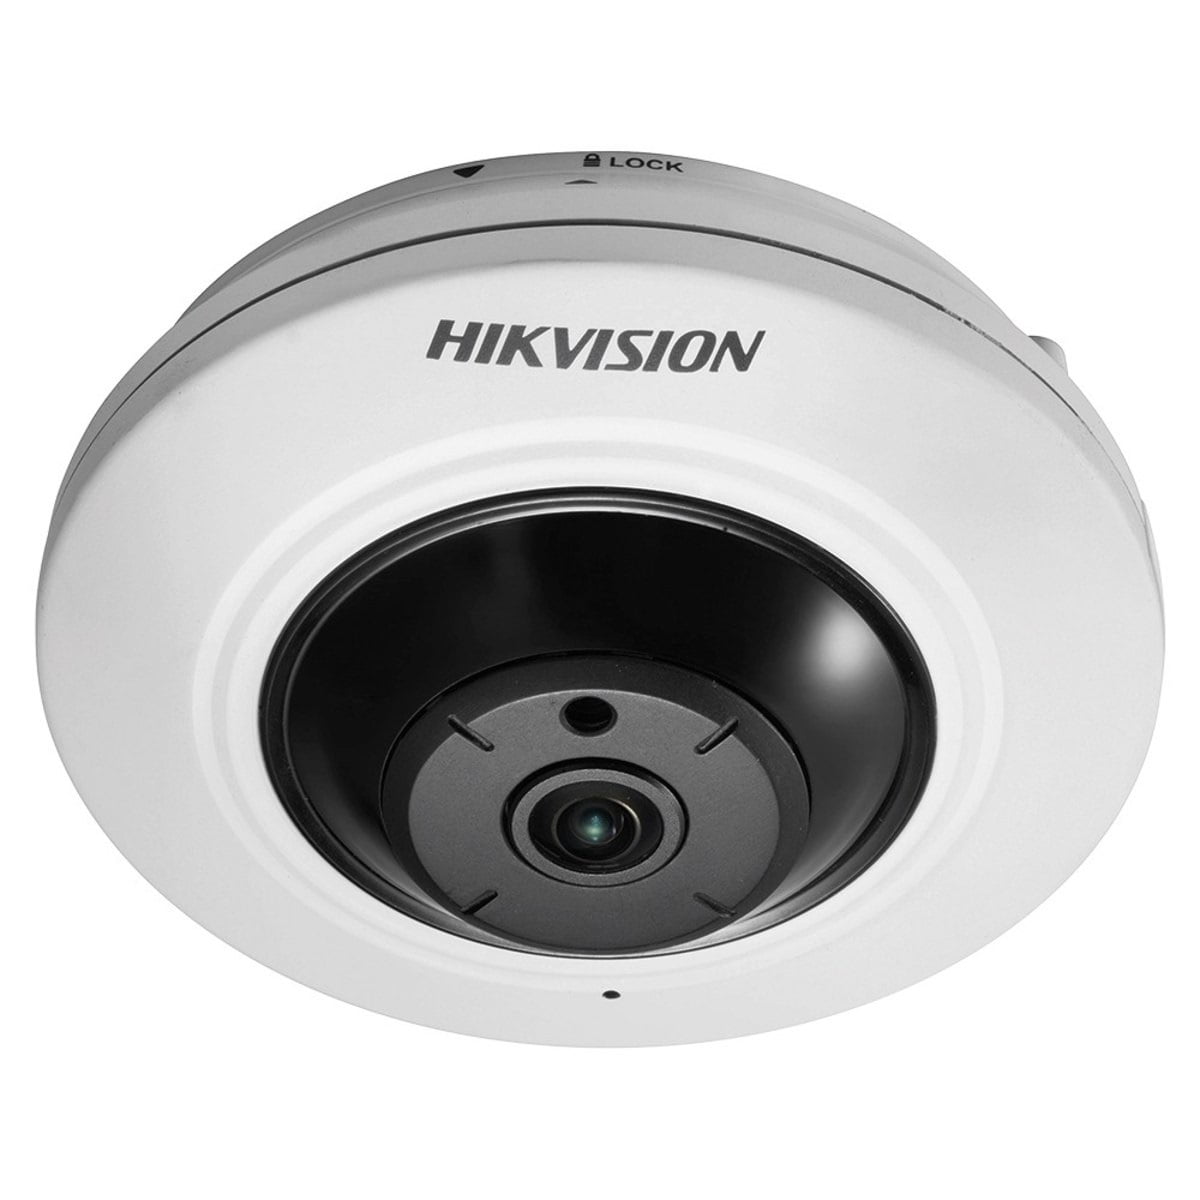 Câmera Hikvision DS-2CC52H1T-FITS Fisheye 360° 5 Megapixels DS-2CC52H1T-FITS, Microfone Embutido